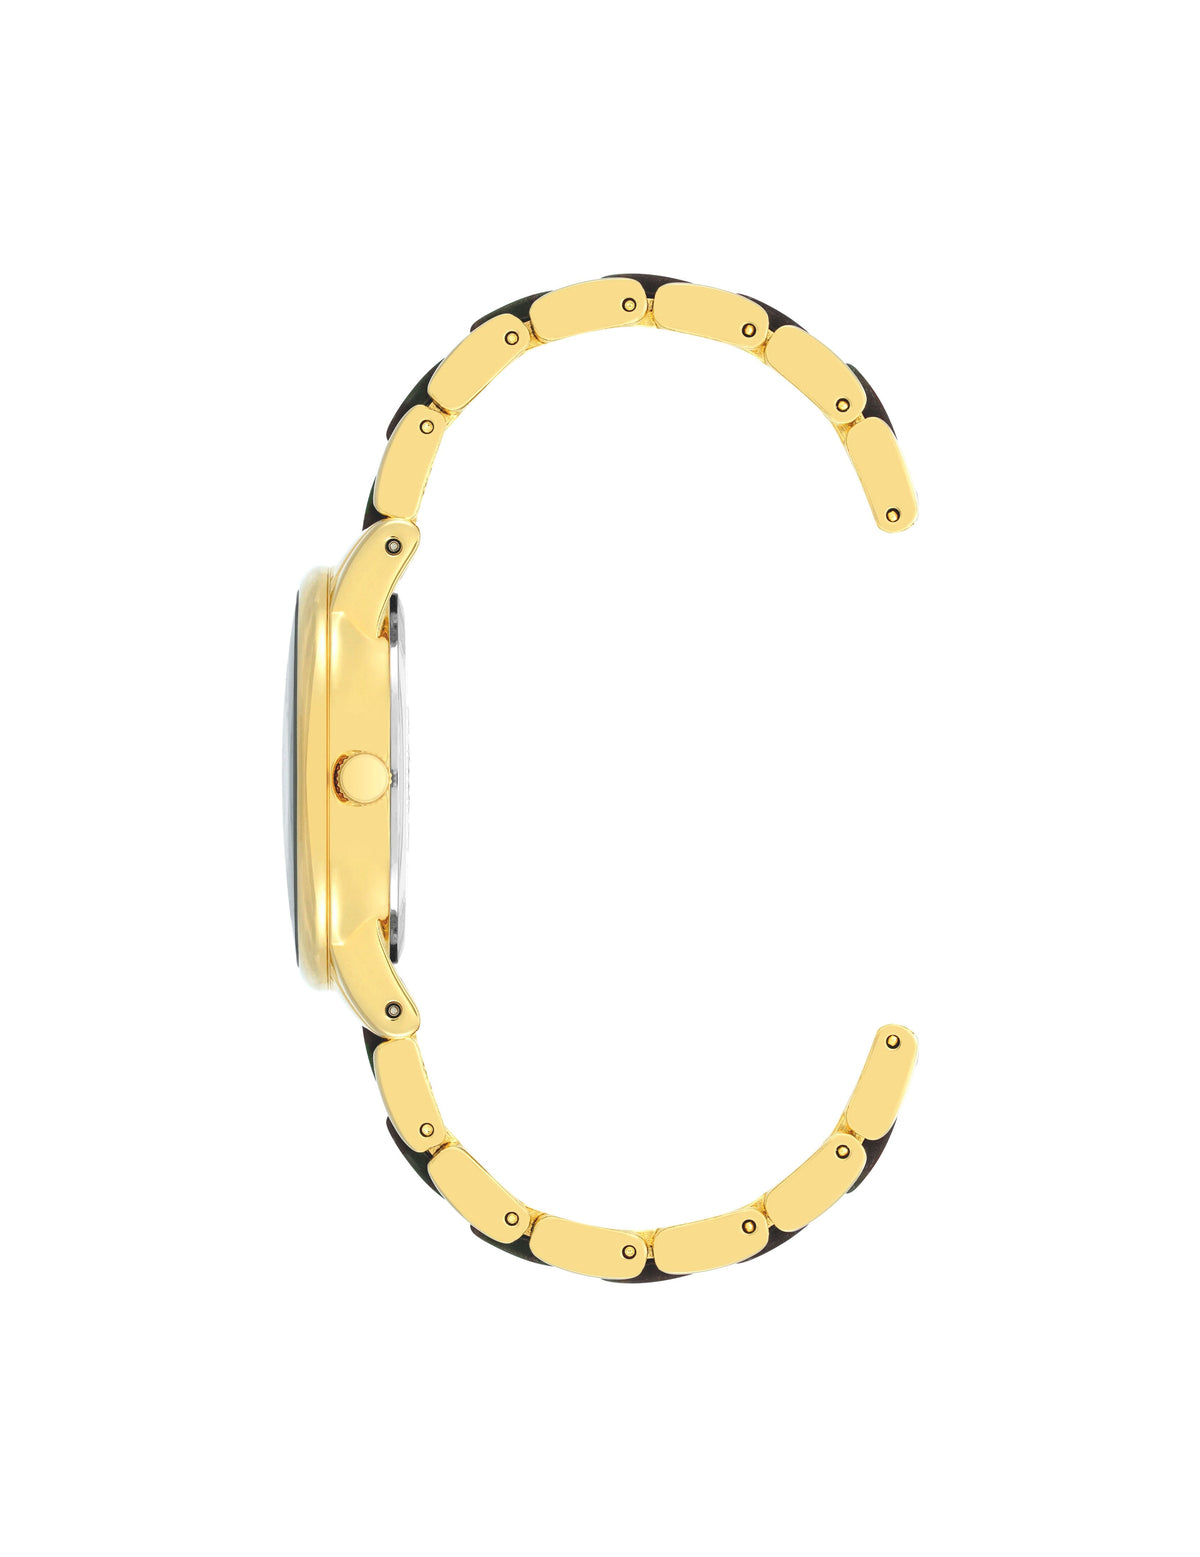 Anne Klein  Resin Link Bracelet Watch - Clearance